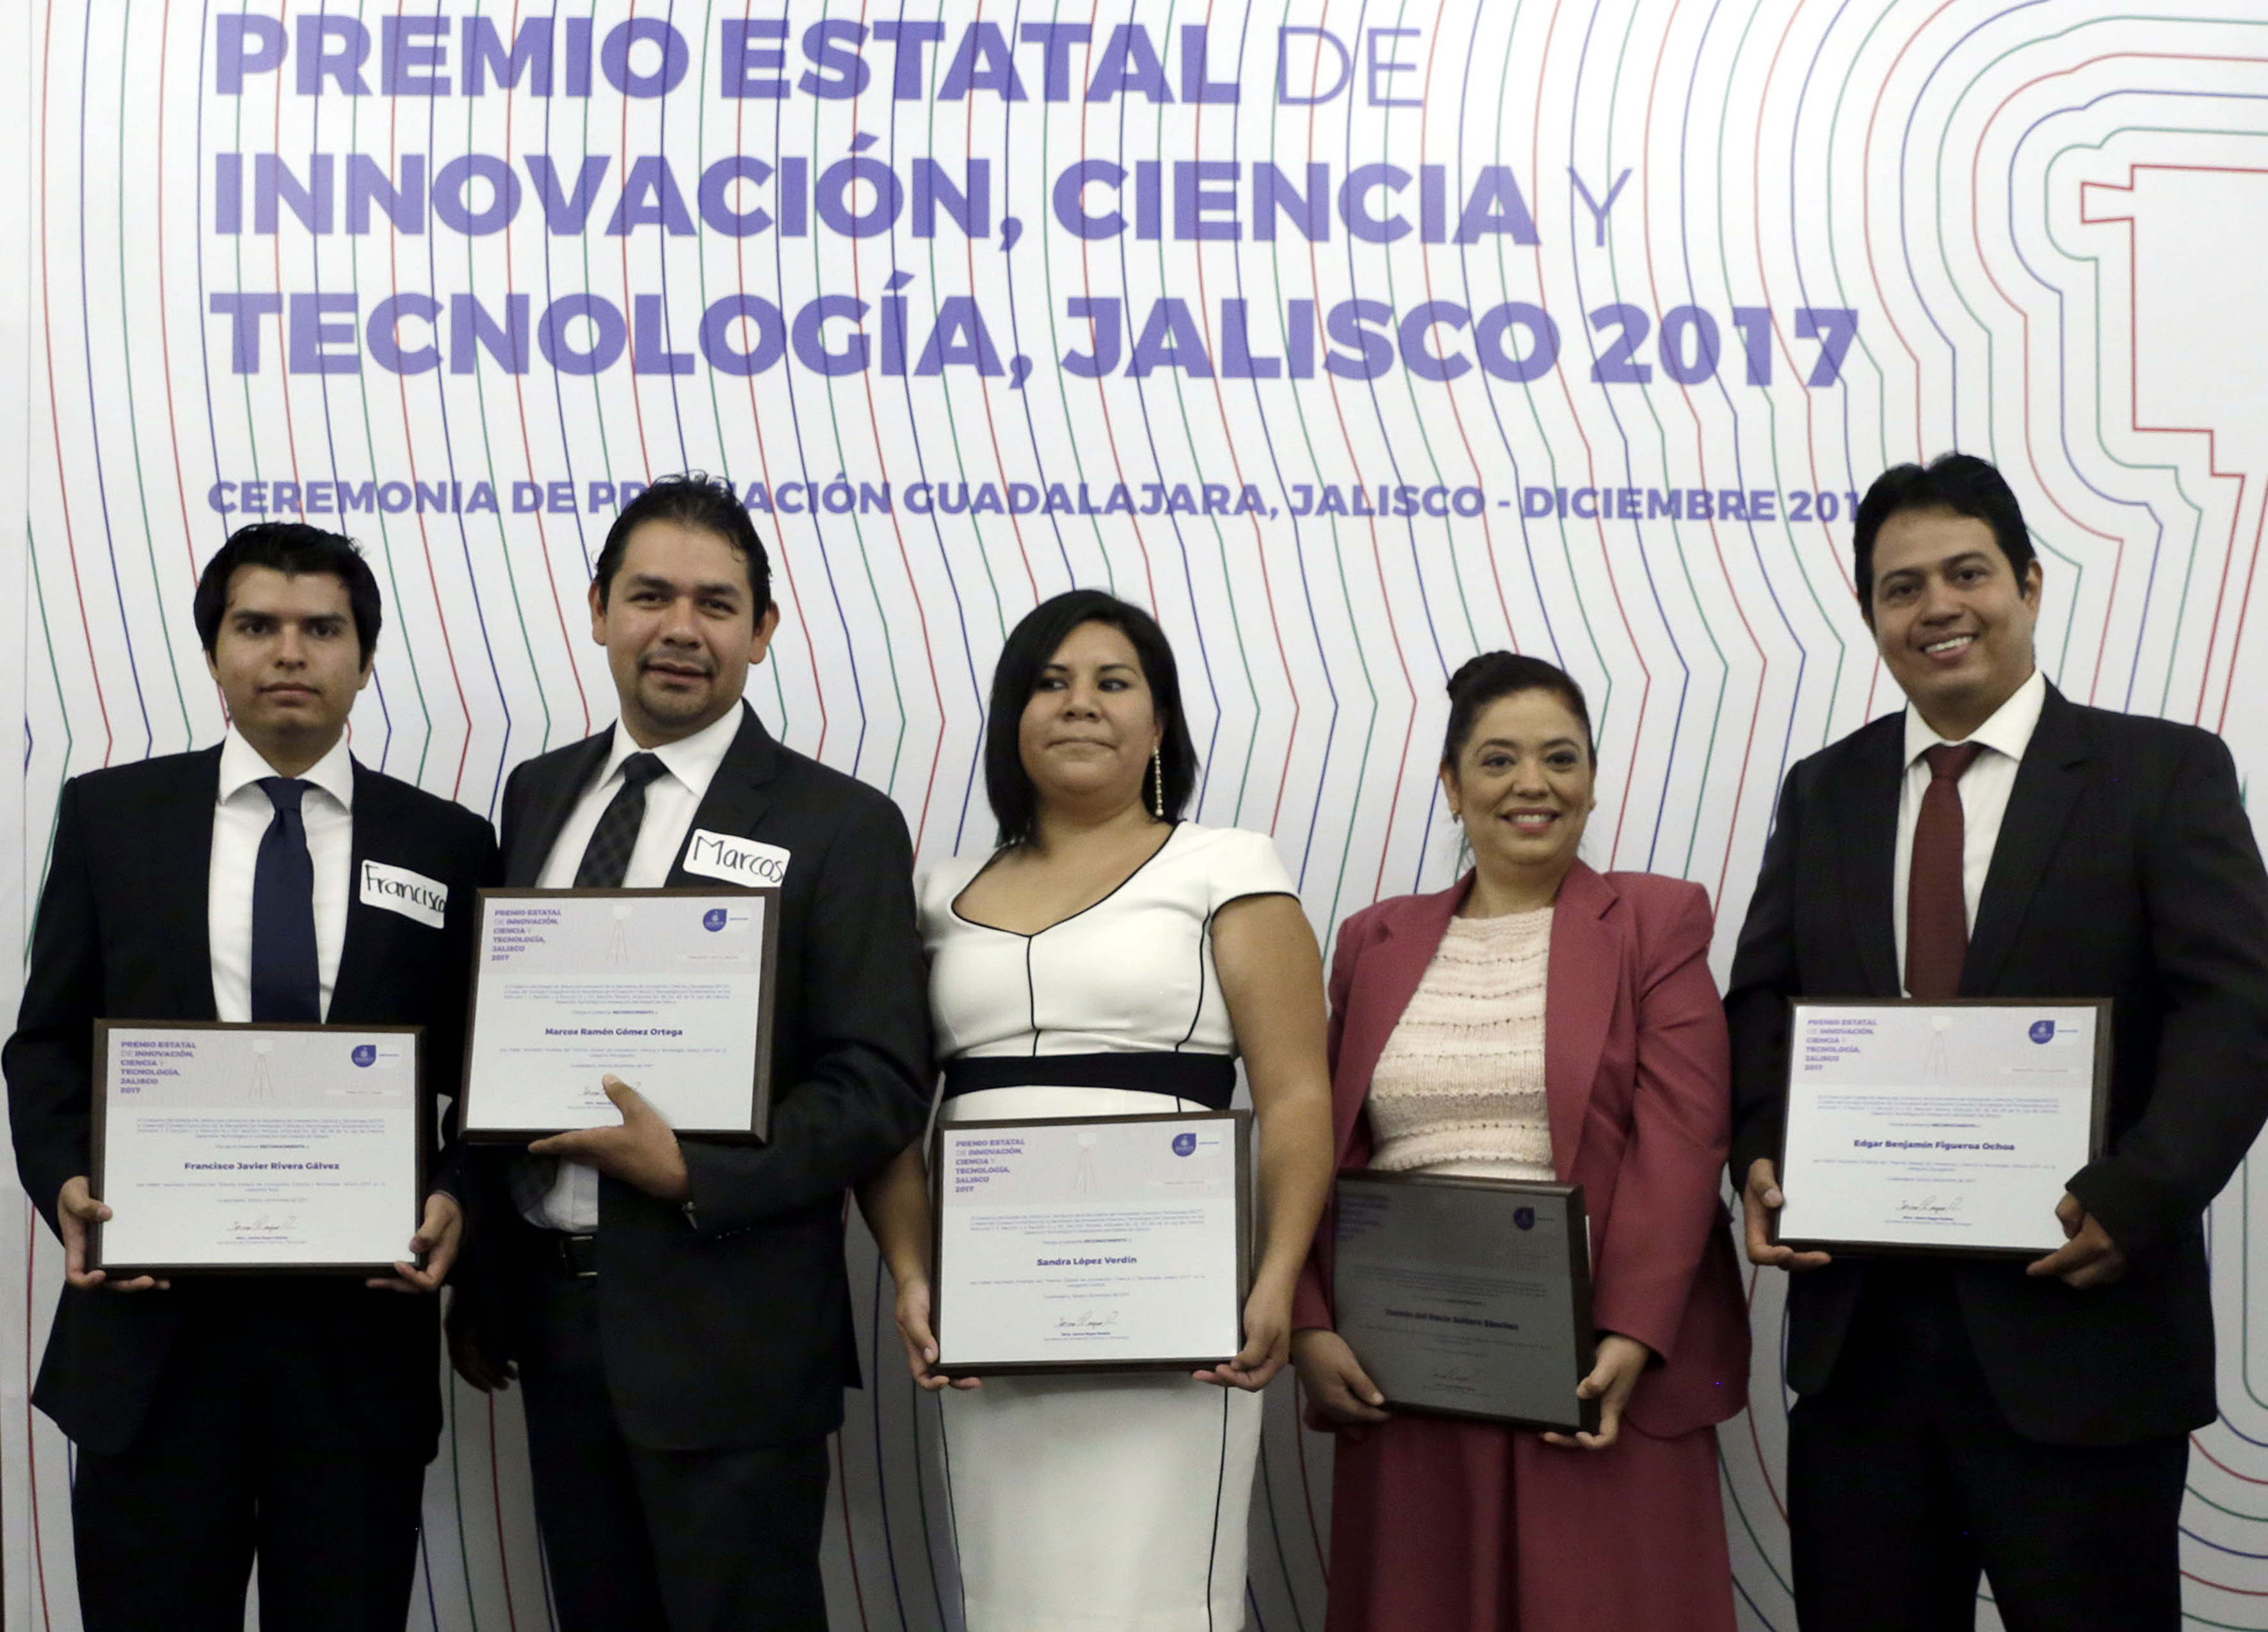 Dra. López Verdín en conjunto con todos los premiados y reconocidos de la UdeG